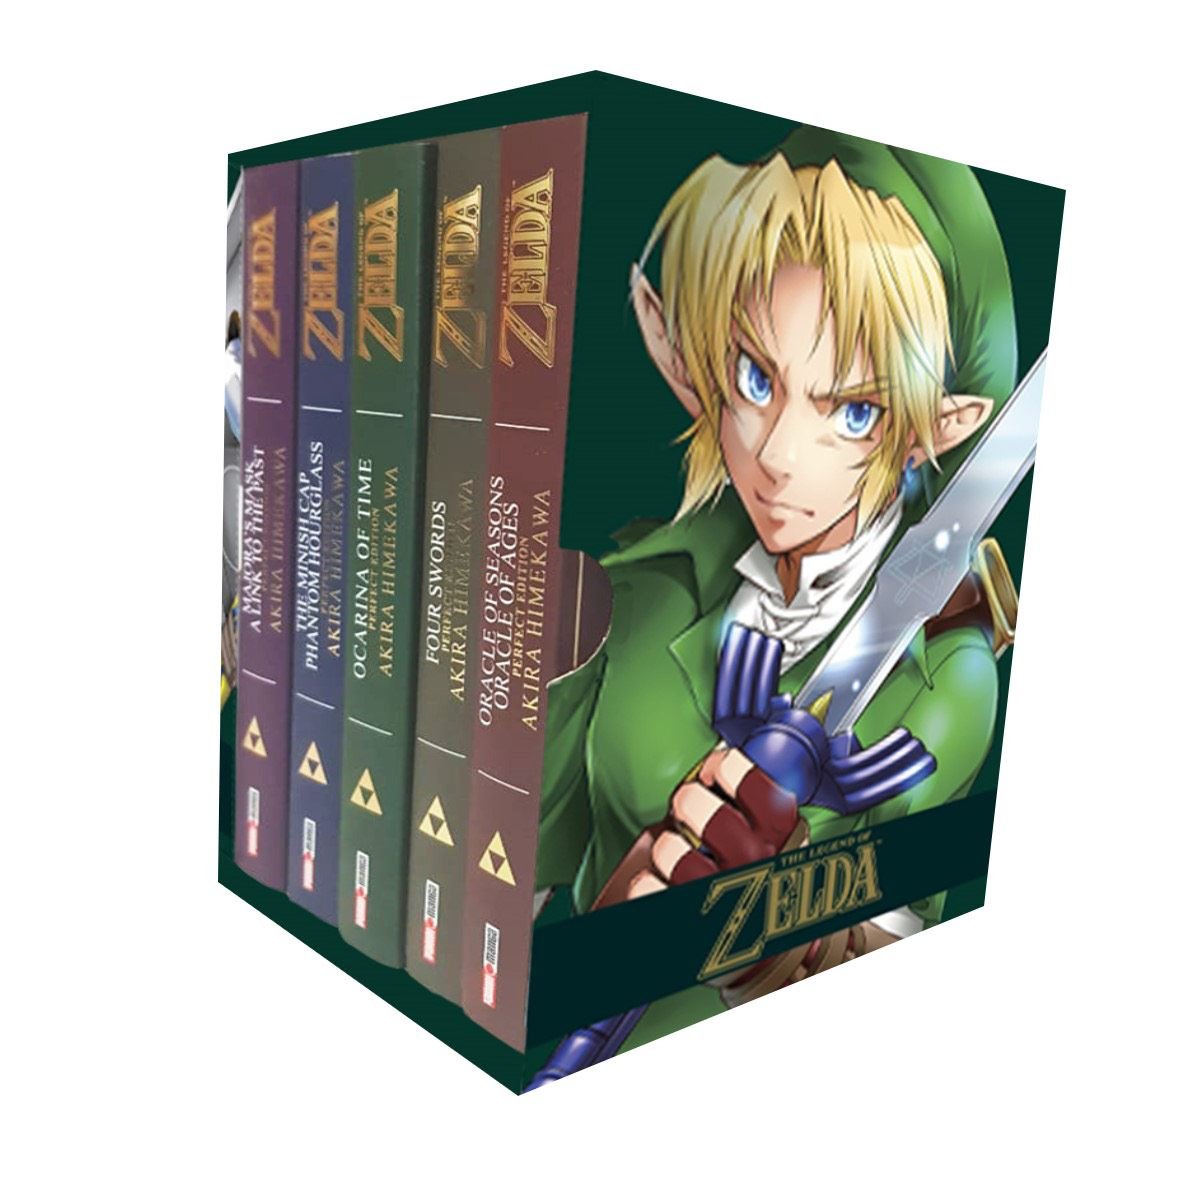 Libros: » Zelda